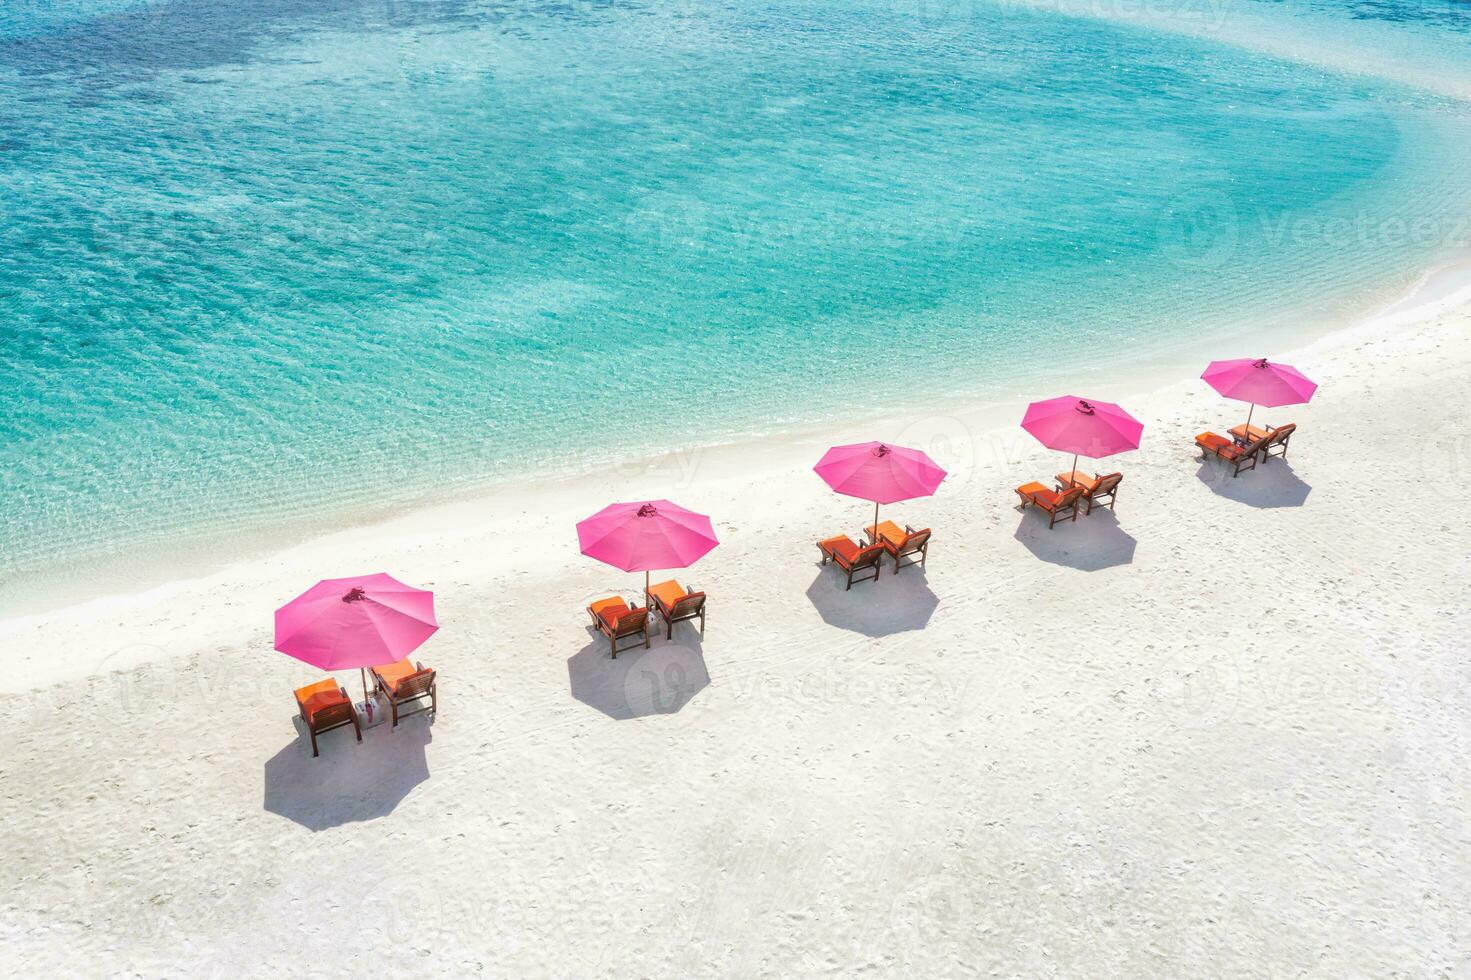 erstaunlicher ruhiger Meeressandhimmel. Freizeittourismus im Sommer. Luftbild mit Stühlen und Sonnenschirmen am paradiesischen Inselstrand, am Meer. Resorturlaub, exotische Natur. schöne Tropen foto